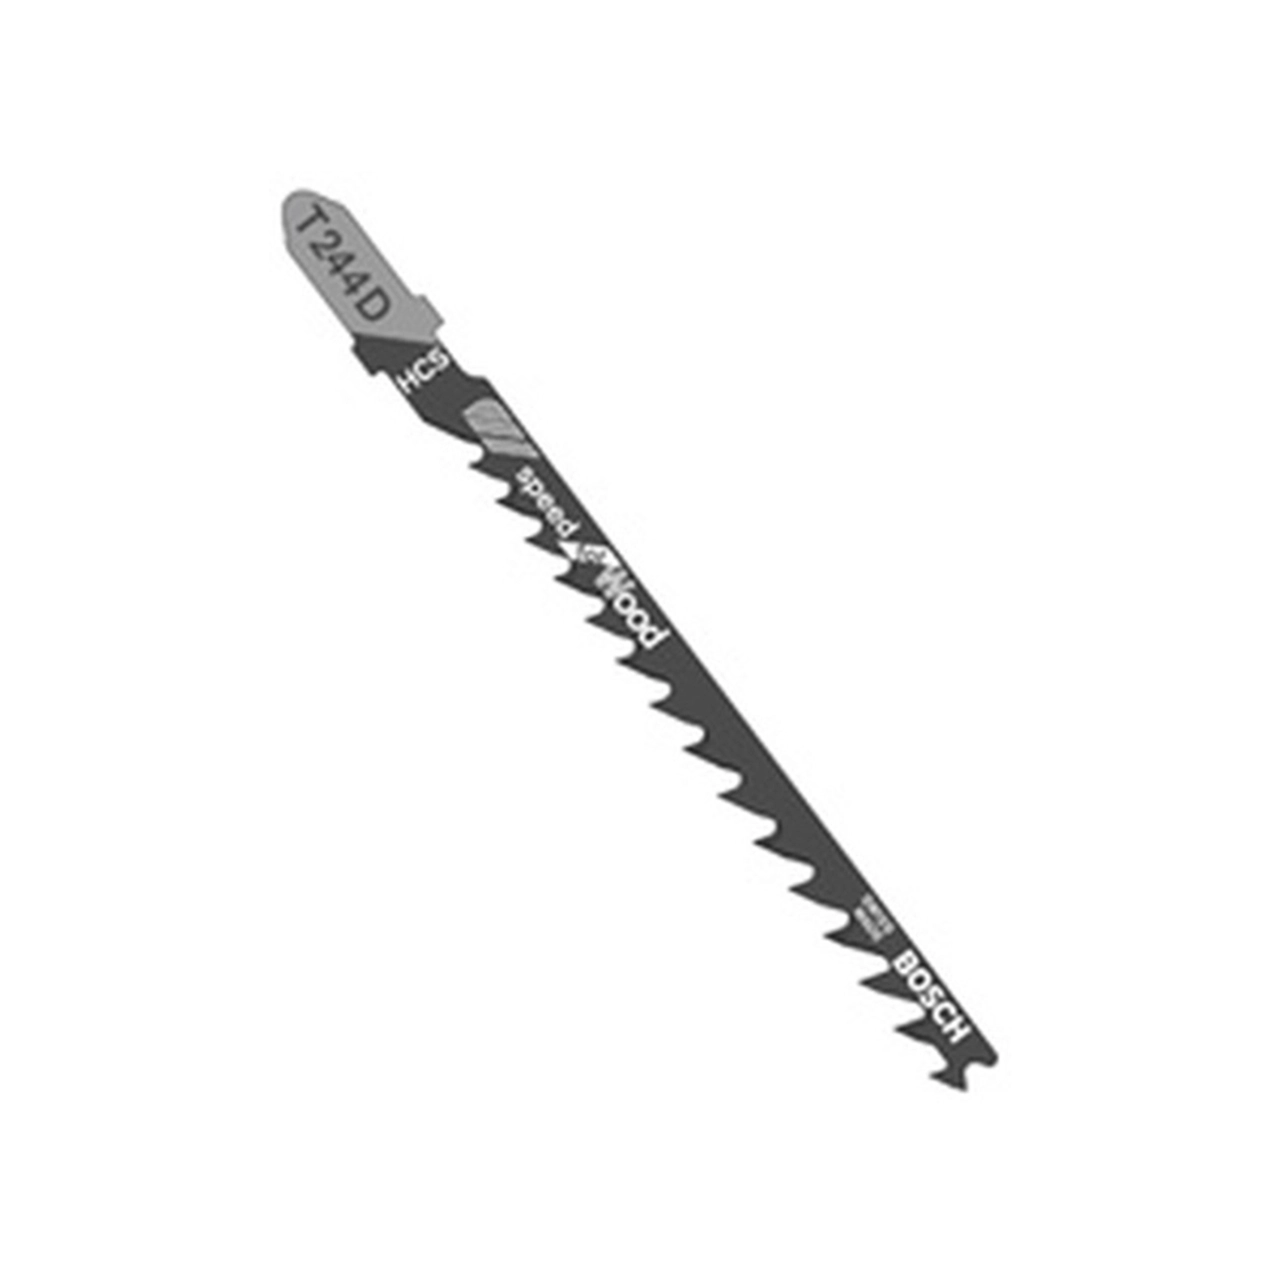 T244D100 4", 6TPI, HCS Bosch Shank Jigsaw Blade (100 pk)